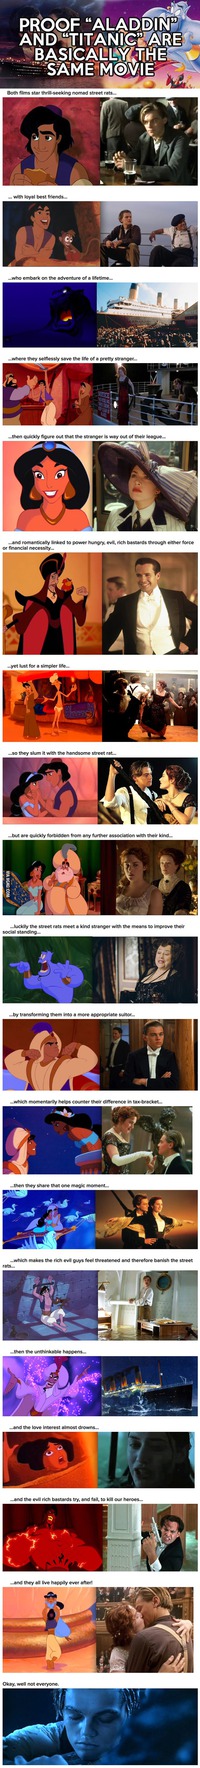 Les similarités entre Aladdin et Titanic